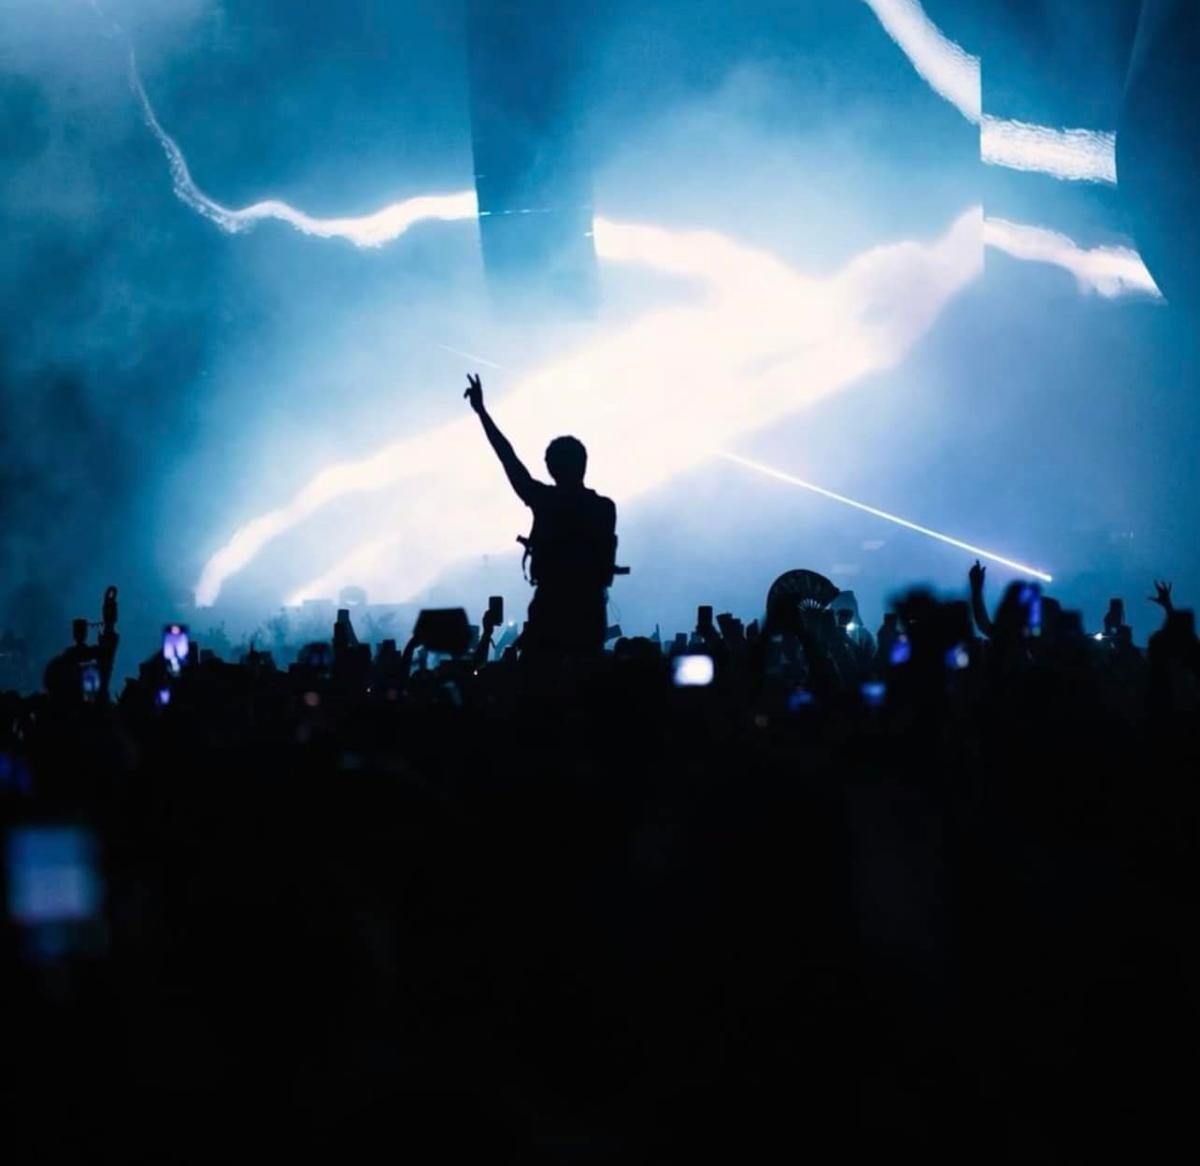 Cea mai ascultată melodie din toate timpurile de pe Spotify îi aparține lui The Weeknd